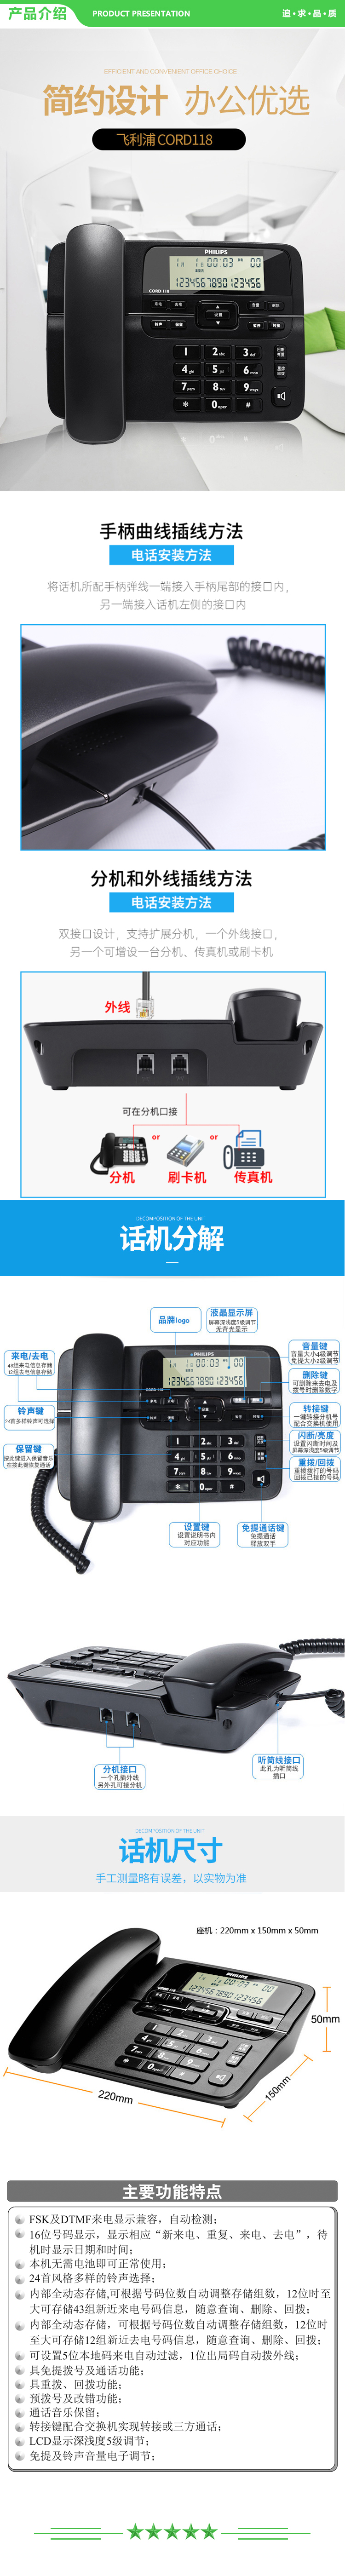 飞利浦 PHILIPS CORD118 电话机座机 固定电话 办公家用 来电显示 双接口 免电池 黑色 .jpg